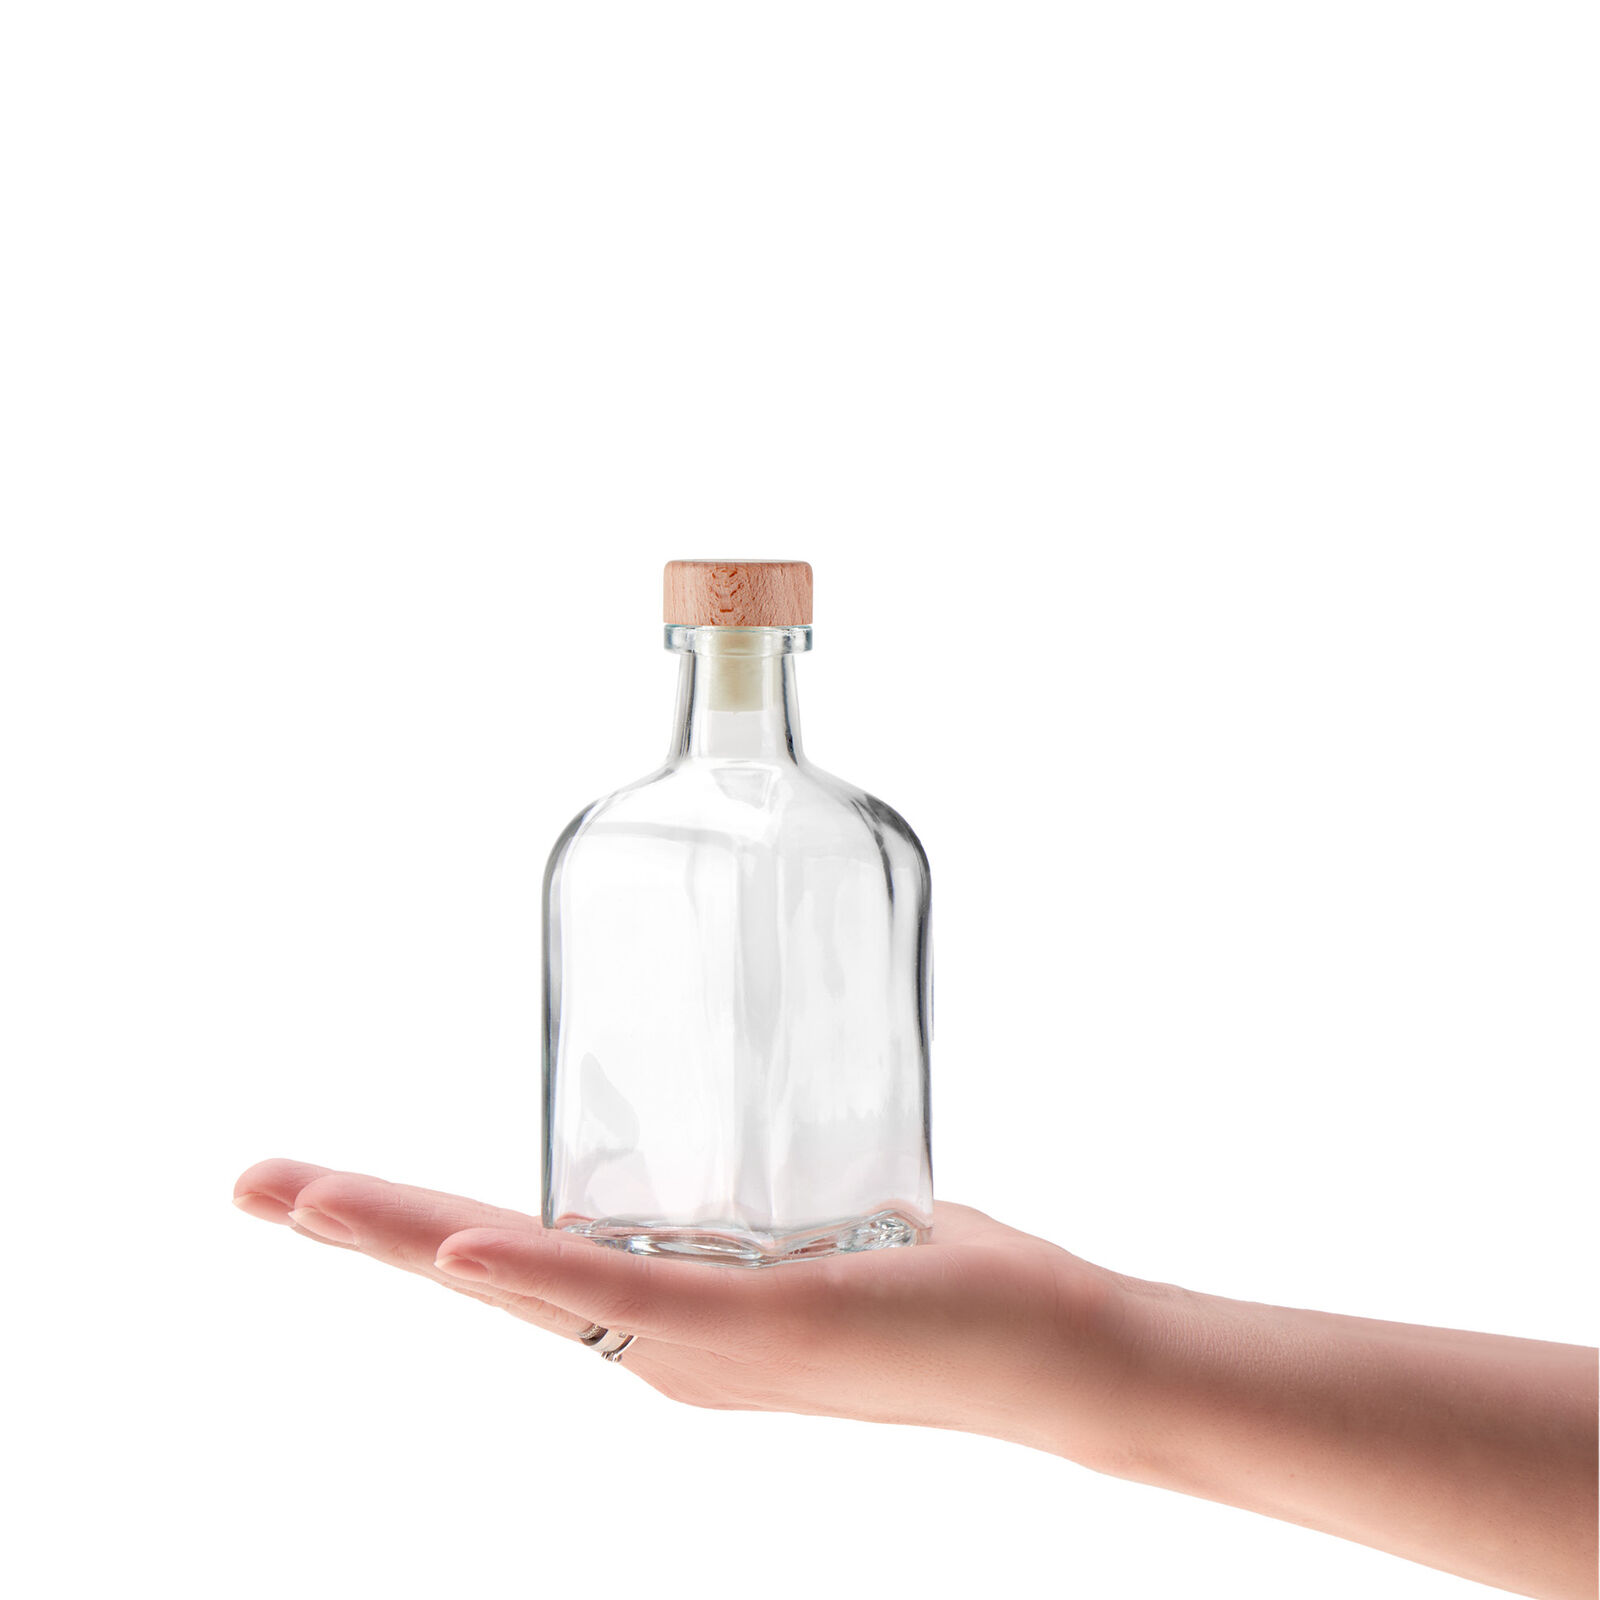 6x Glasflasche 250 ml mit Korken - leere Flasche mit Korkenverschluss